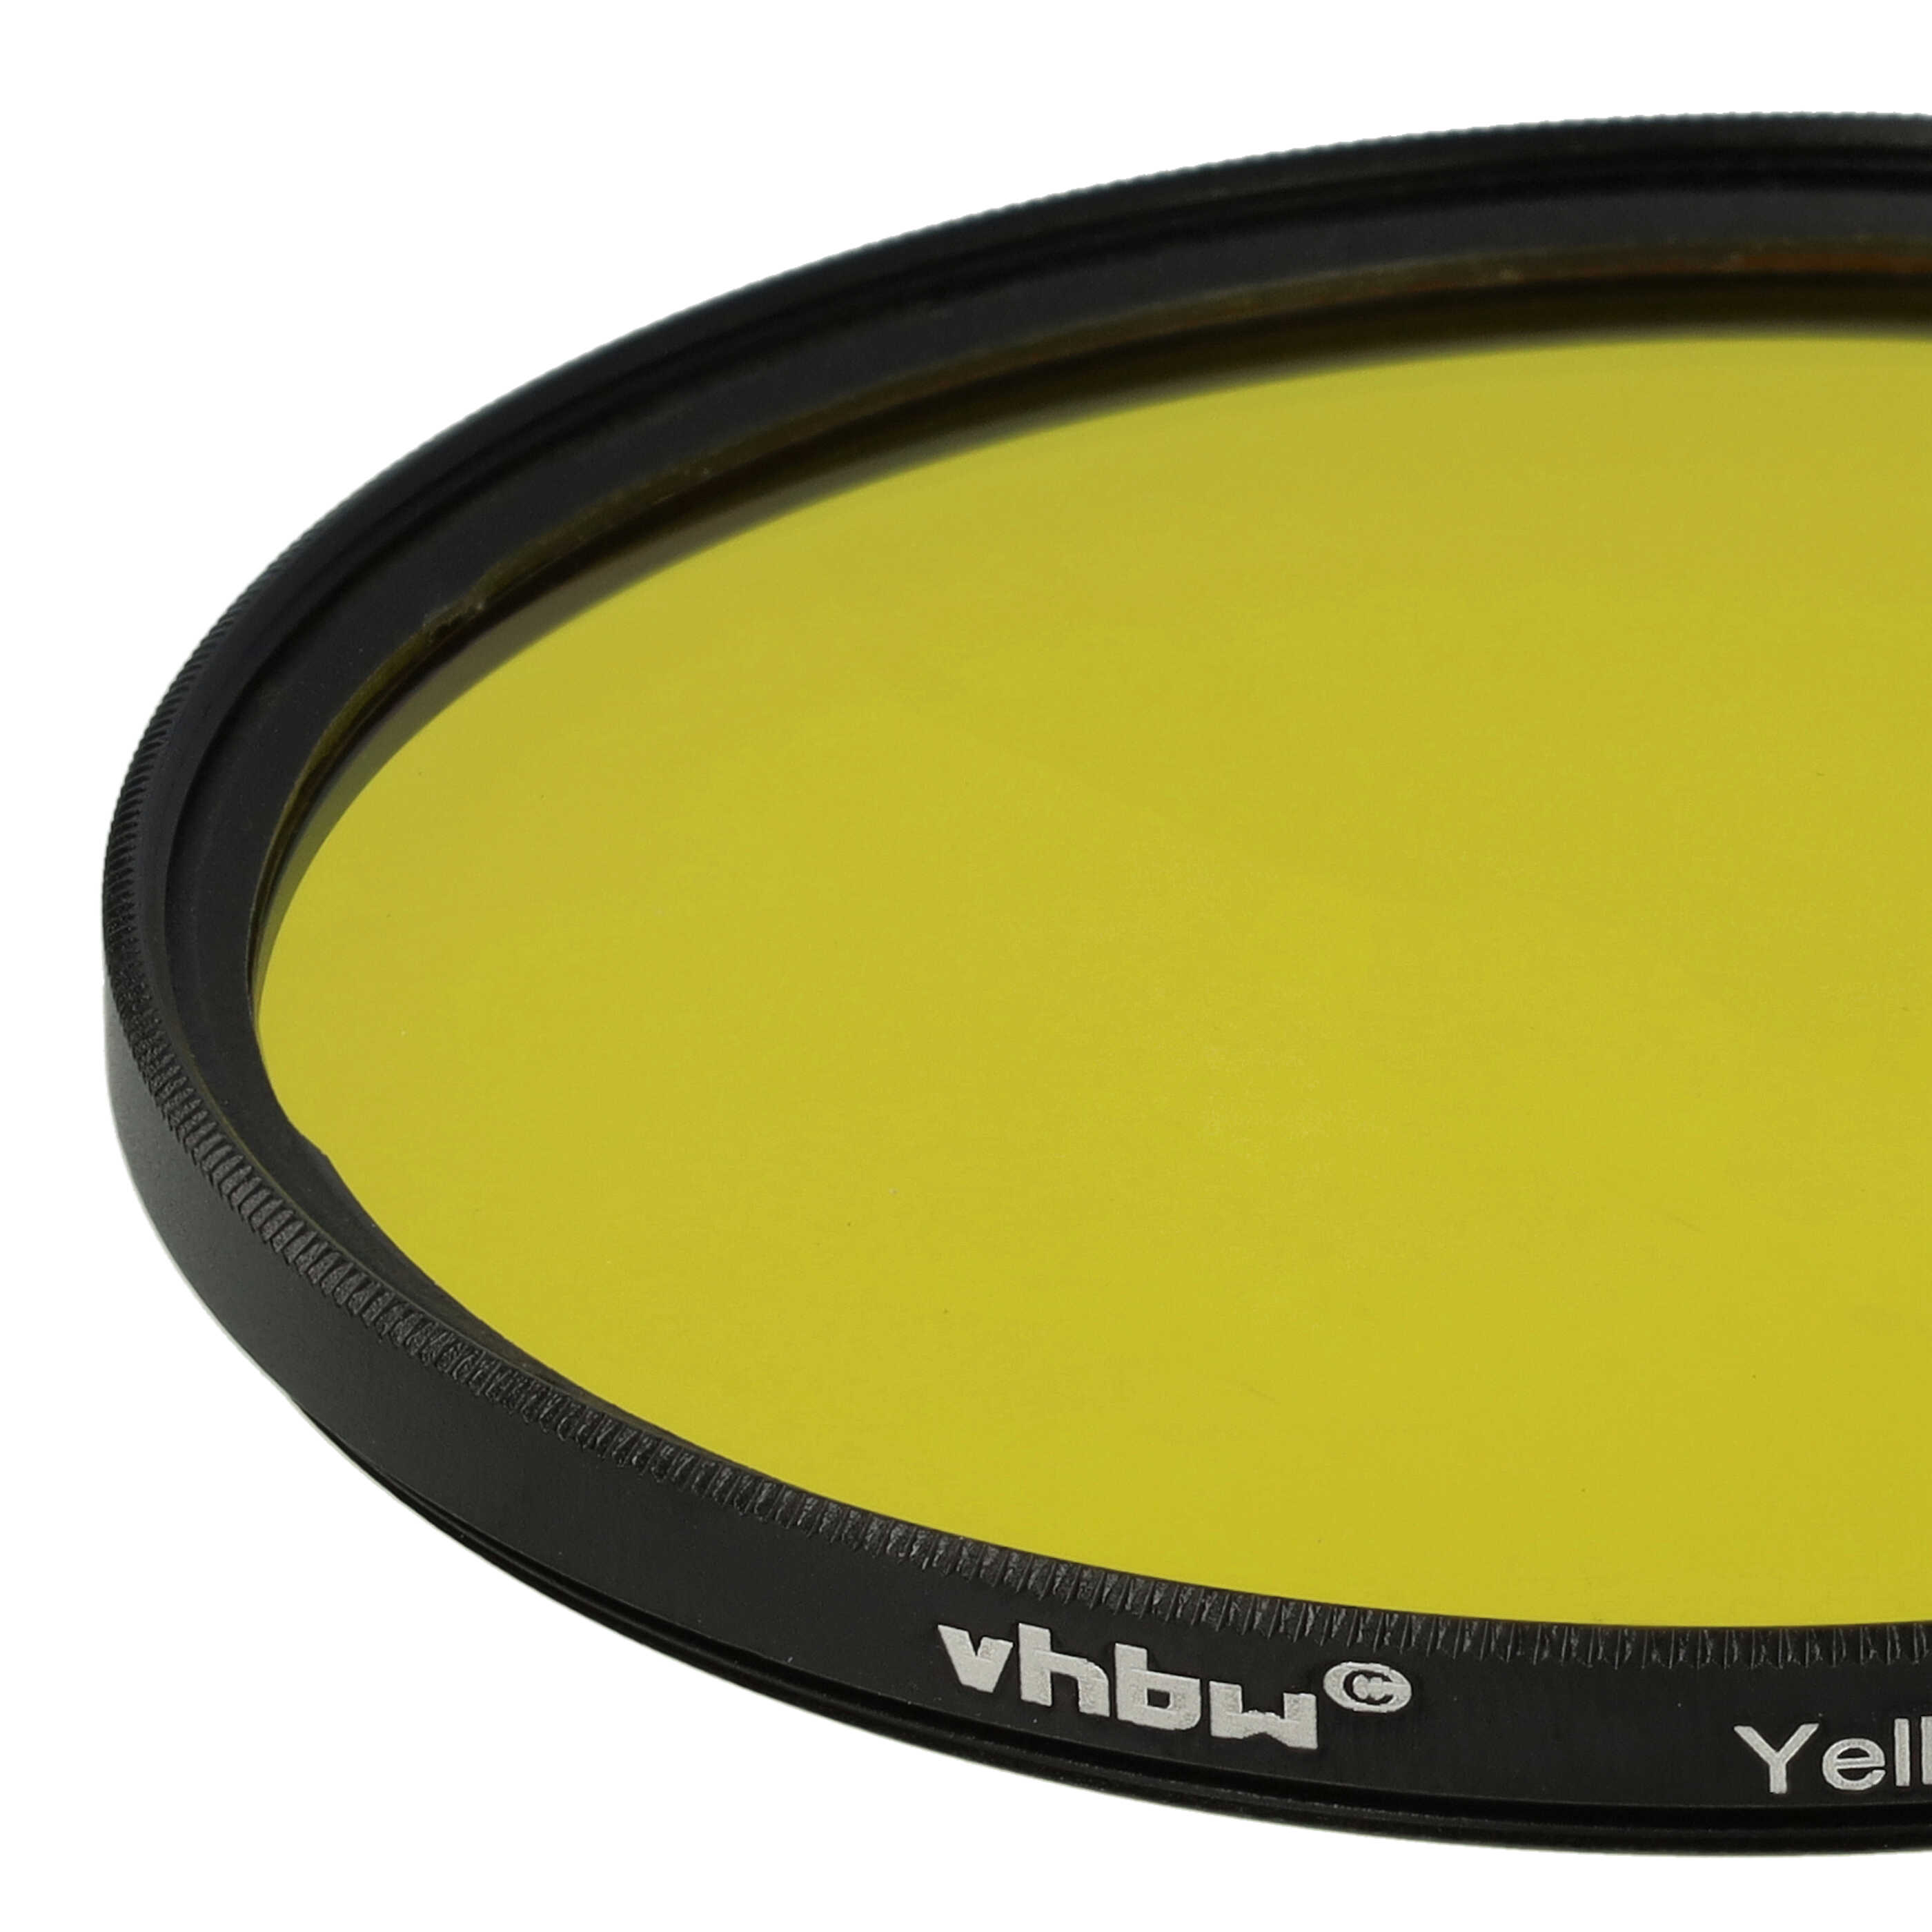 Filtro colorato per obiettivi fotocamera con filettatura da 77 mm - filtro giallo